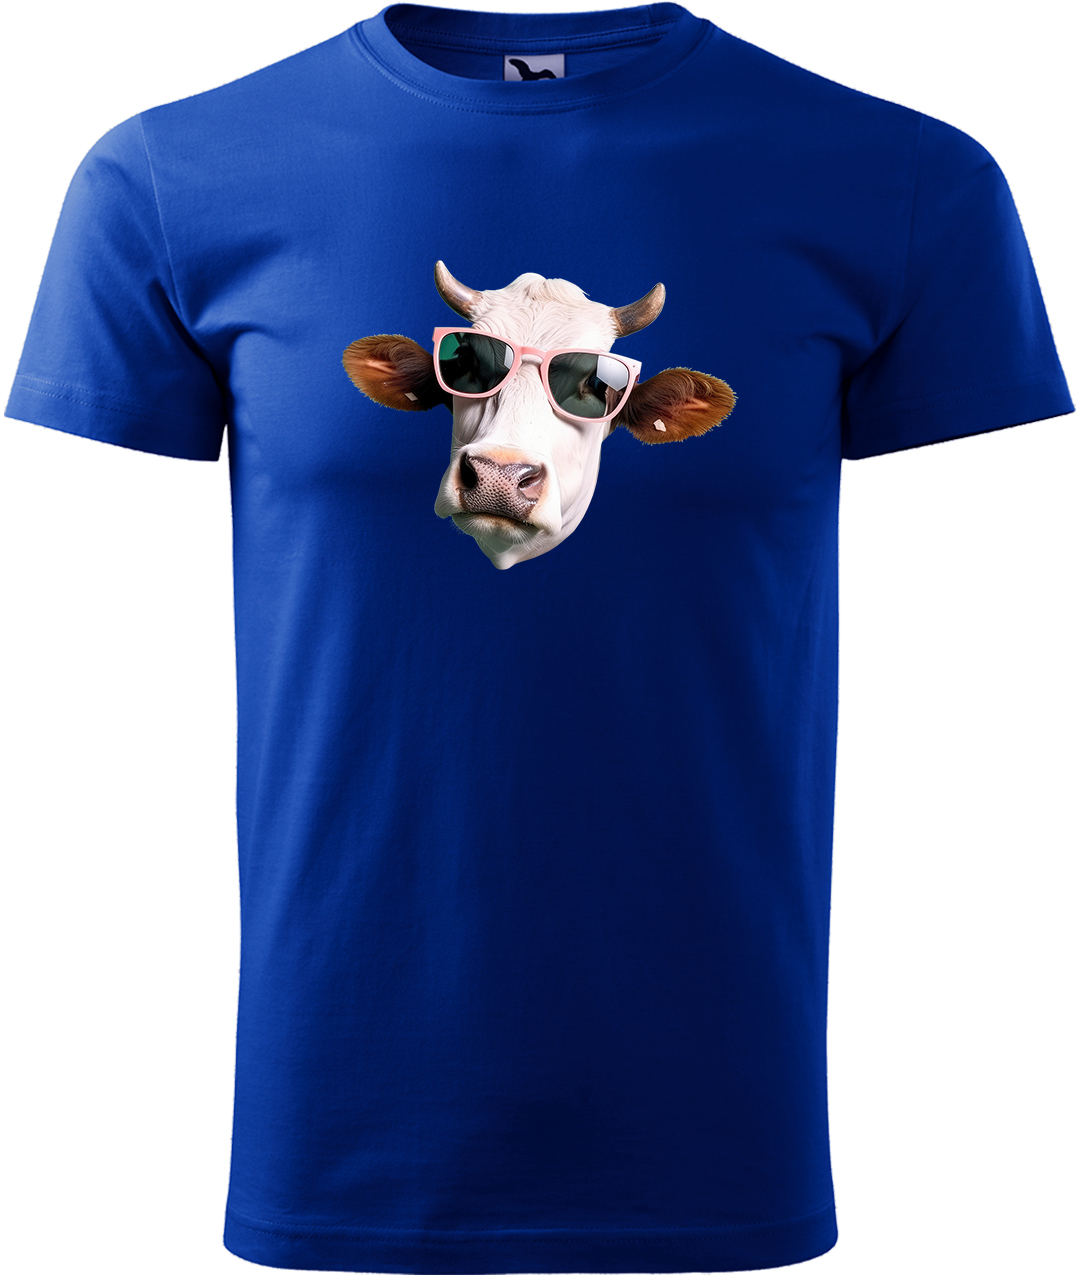 Pánské tričko s krávou - Kráva v brýlích Velikost: S, Barva: Královská modrá (05), Střih: pánský